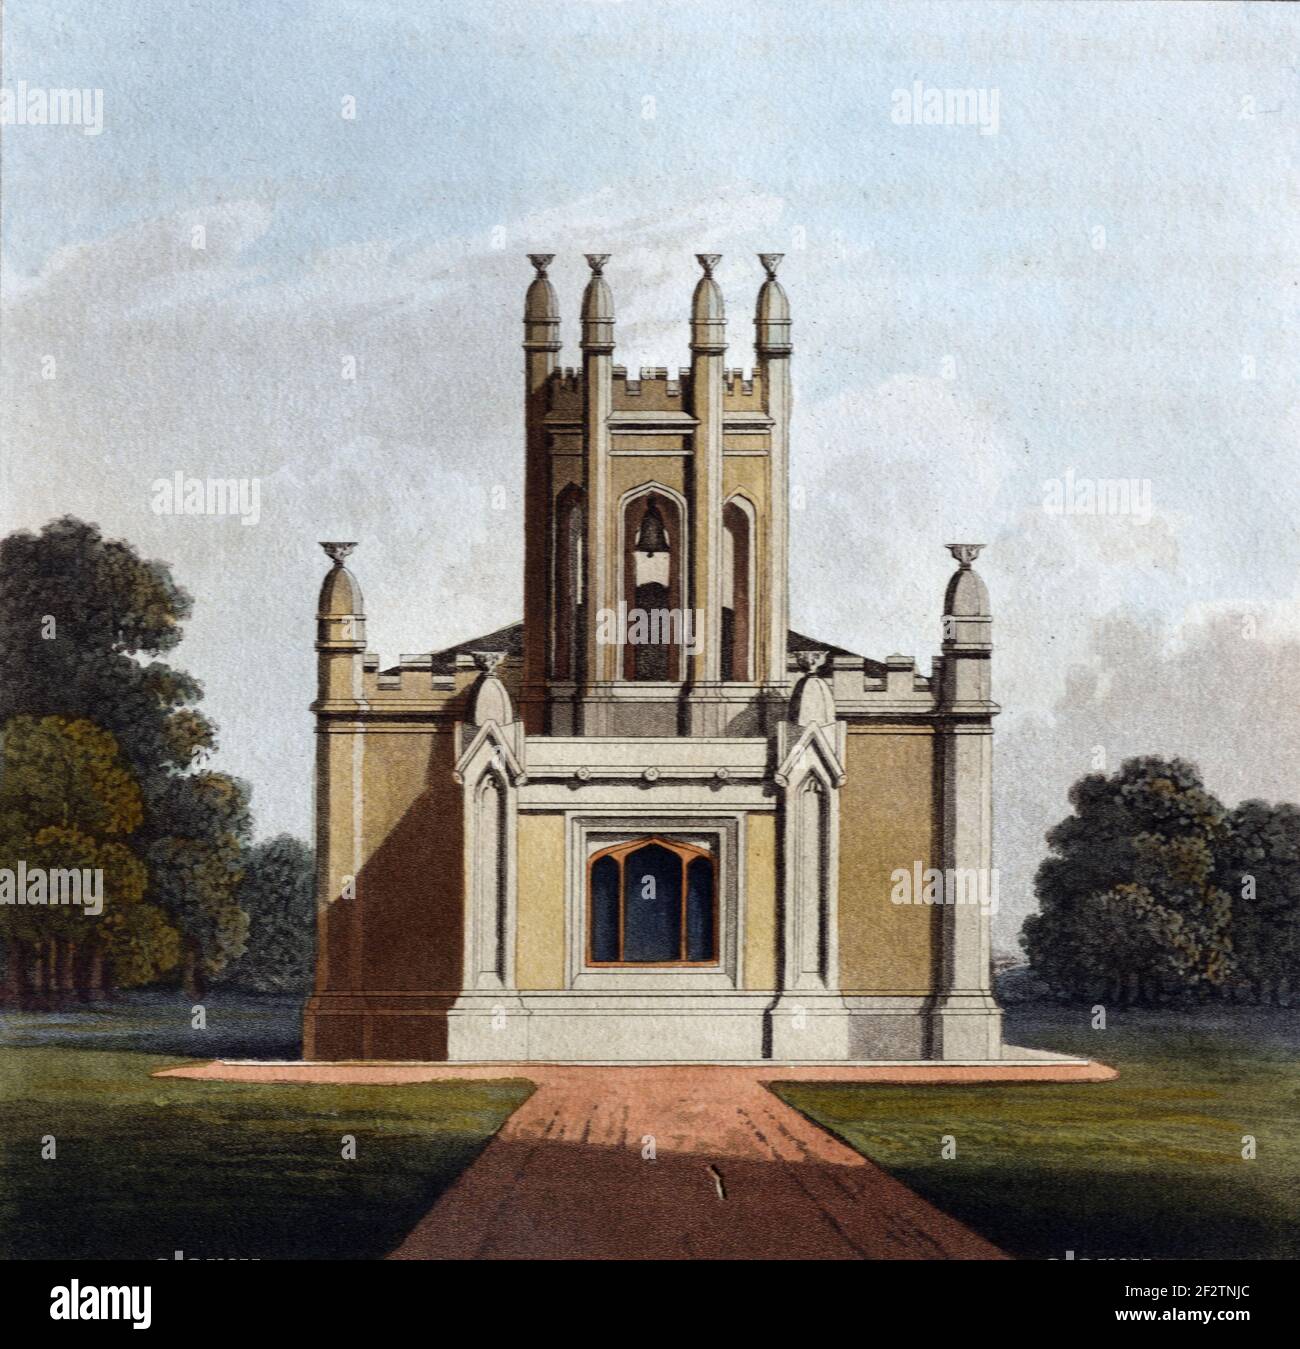 Cappella privata neo-gotica (1827) disegno architettonico d'epoca, acquatinto o incisione di James Thomson (1827) Foto Stock